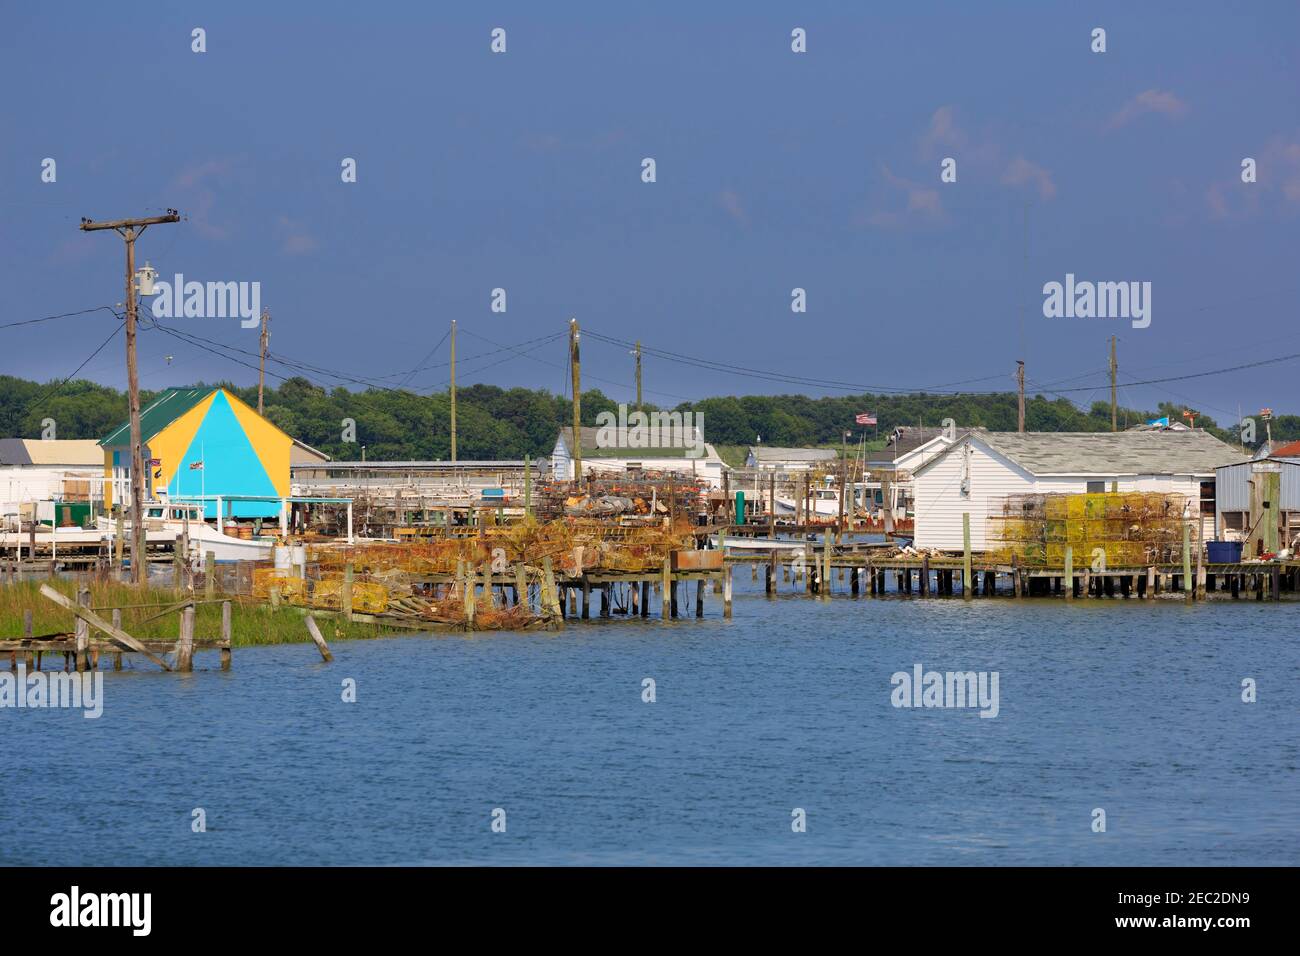 Fishing shanties on Tangier Island, Chesapeake Bay Stock Photo